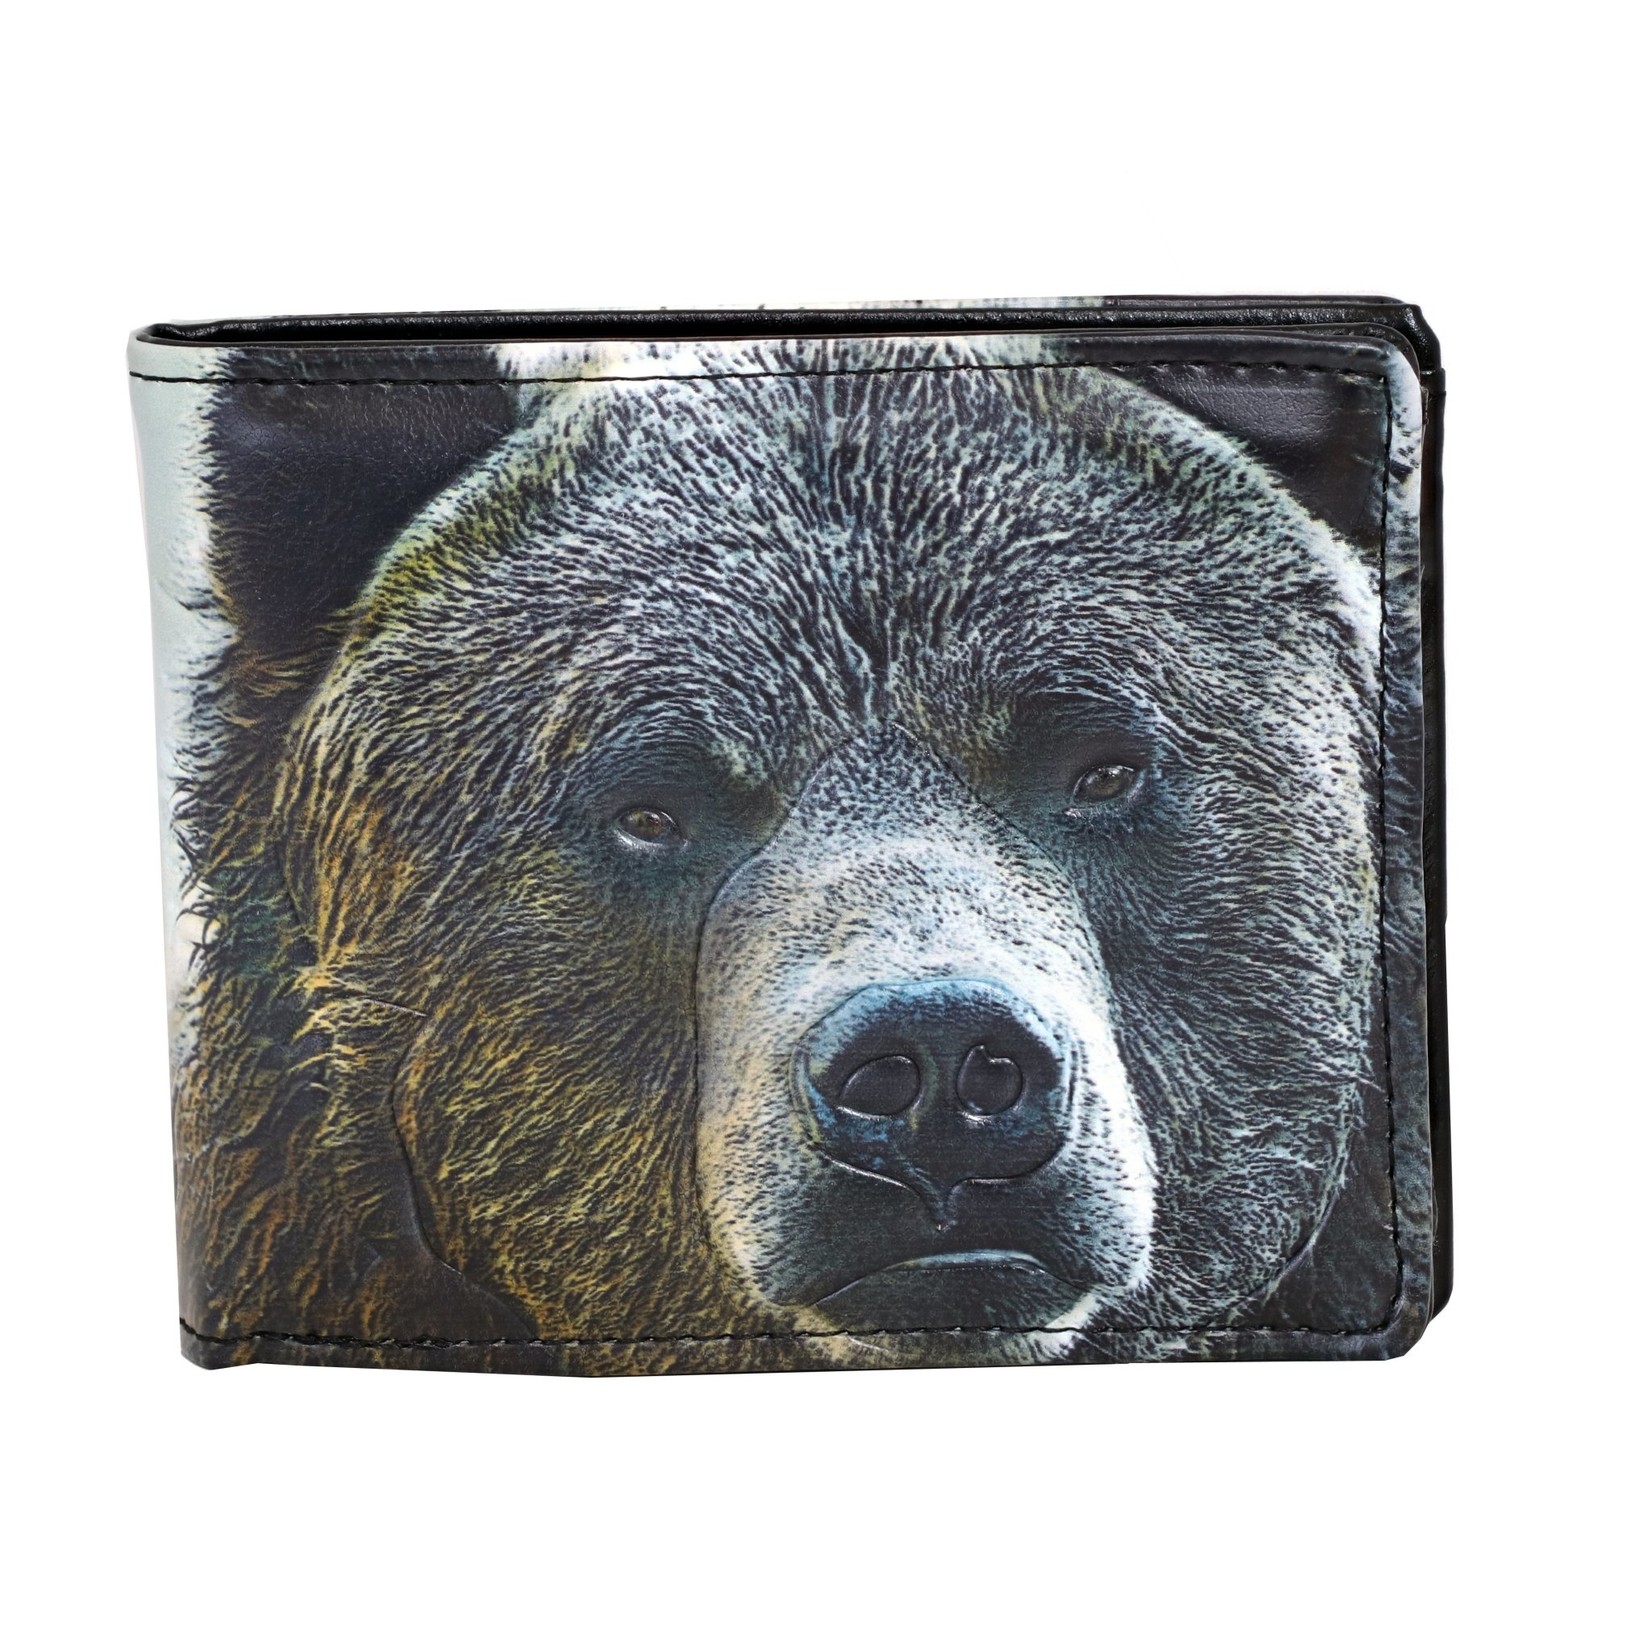 Bear face men's wallet